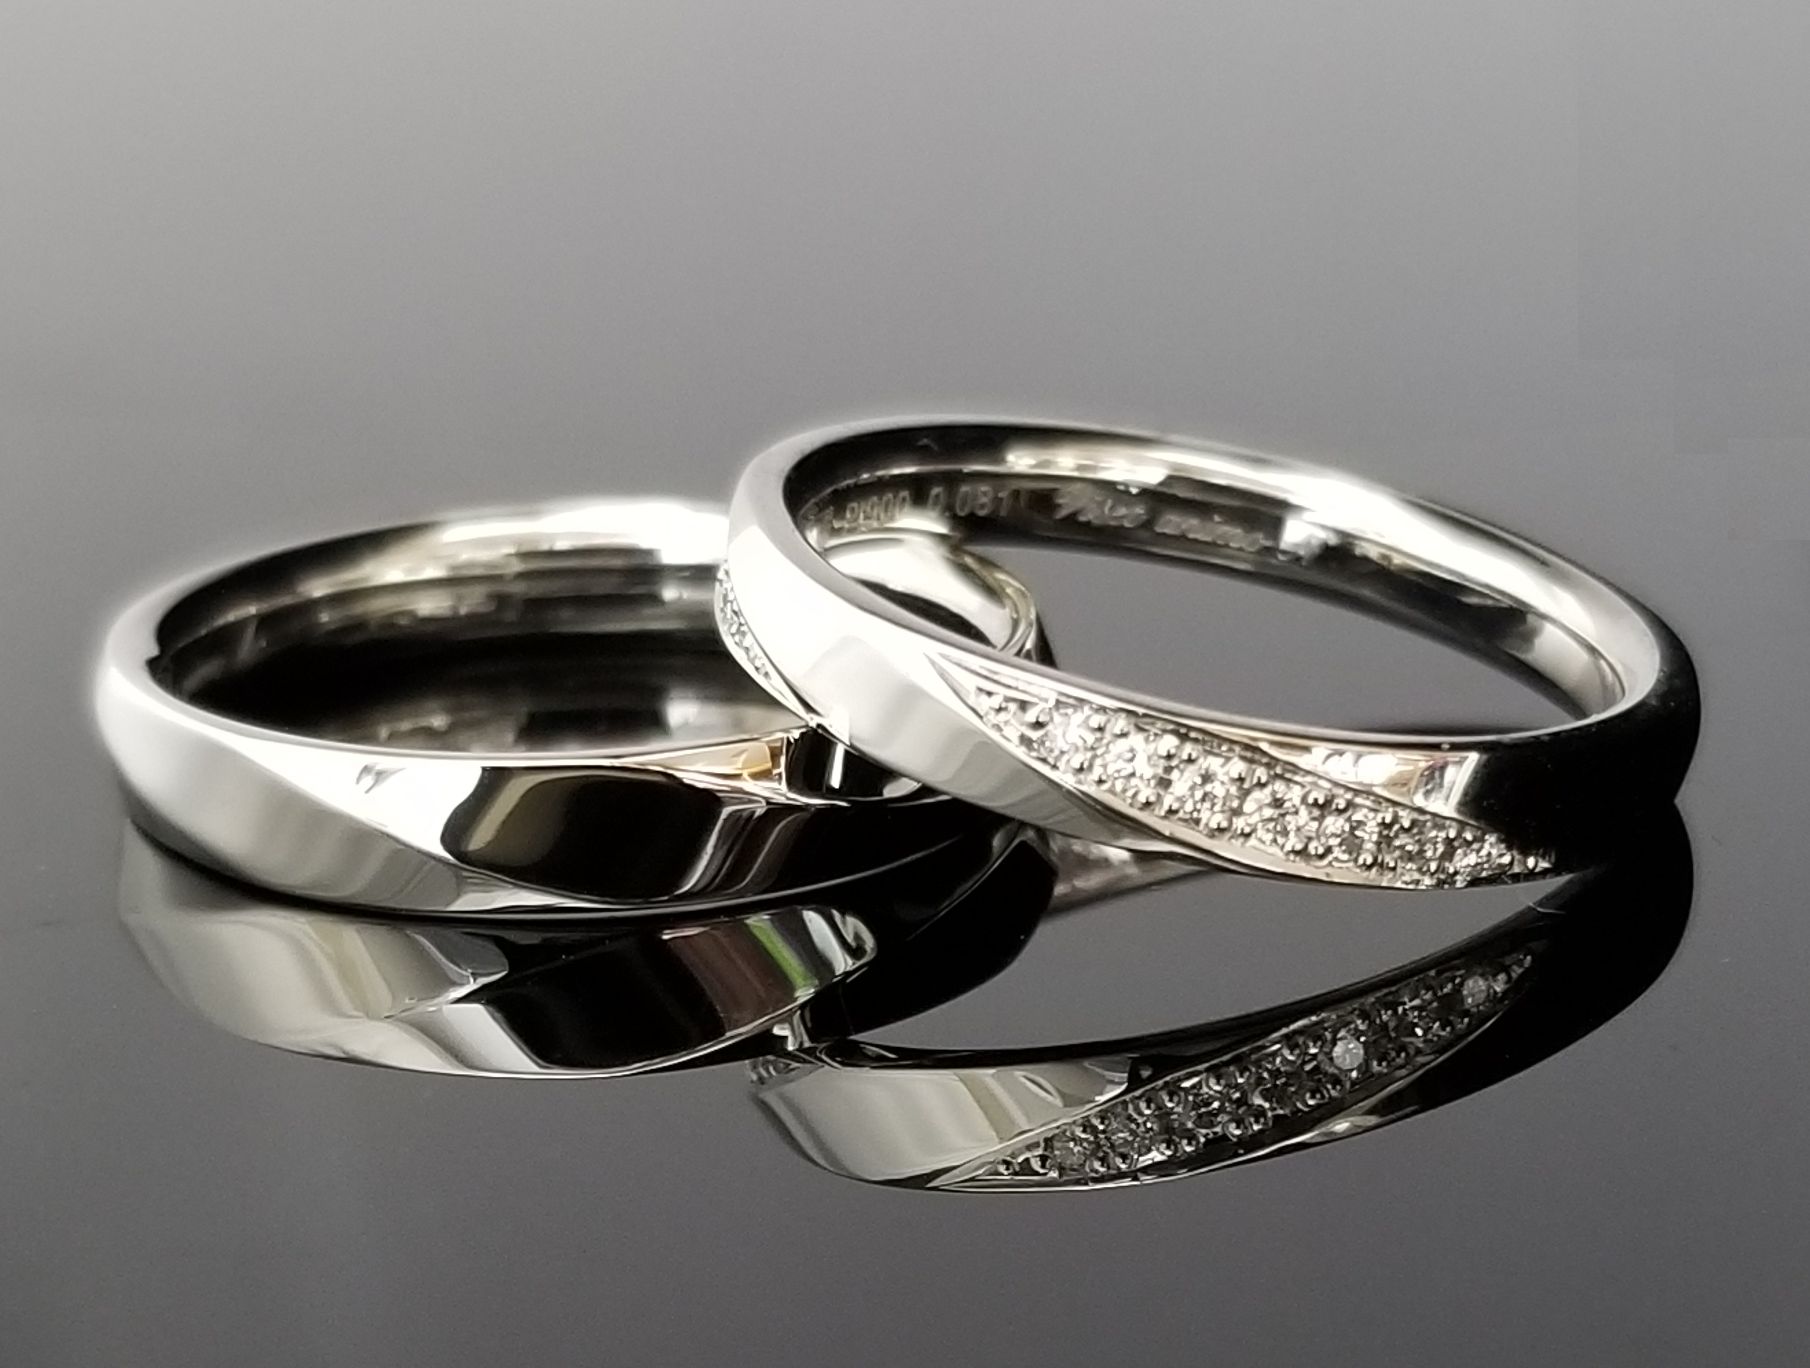 面取りにダイヤを敷き詰めた上品な指輪 | 結婚・婚約指輪のオーダー 